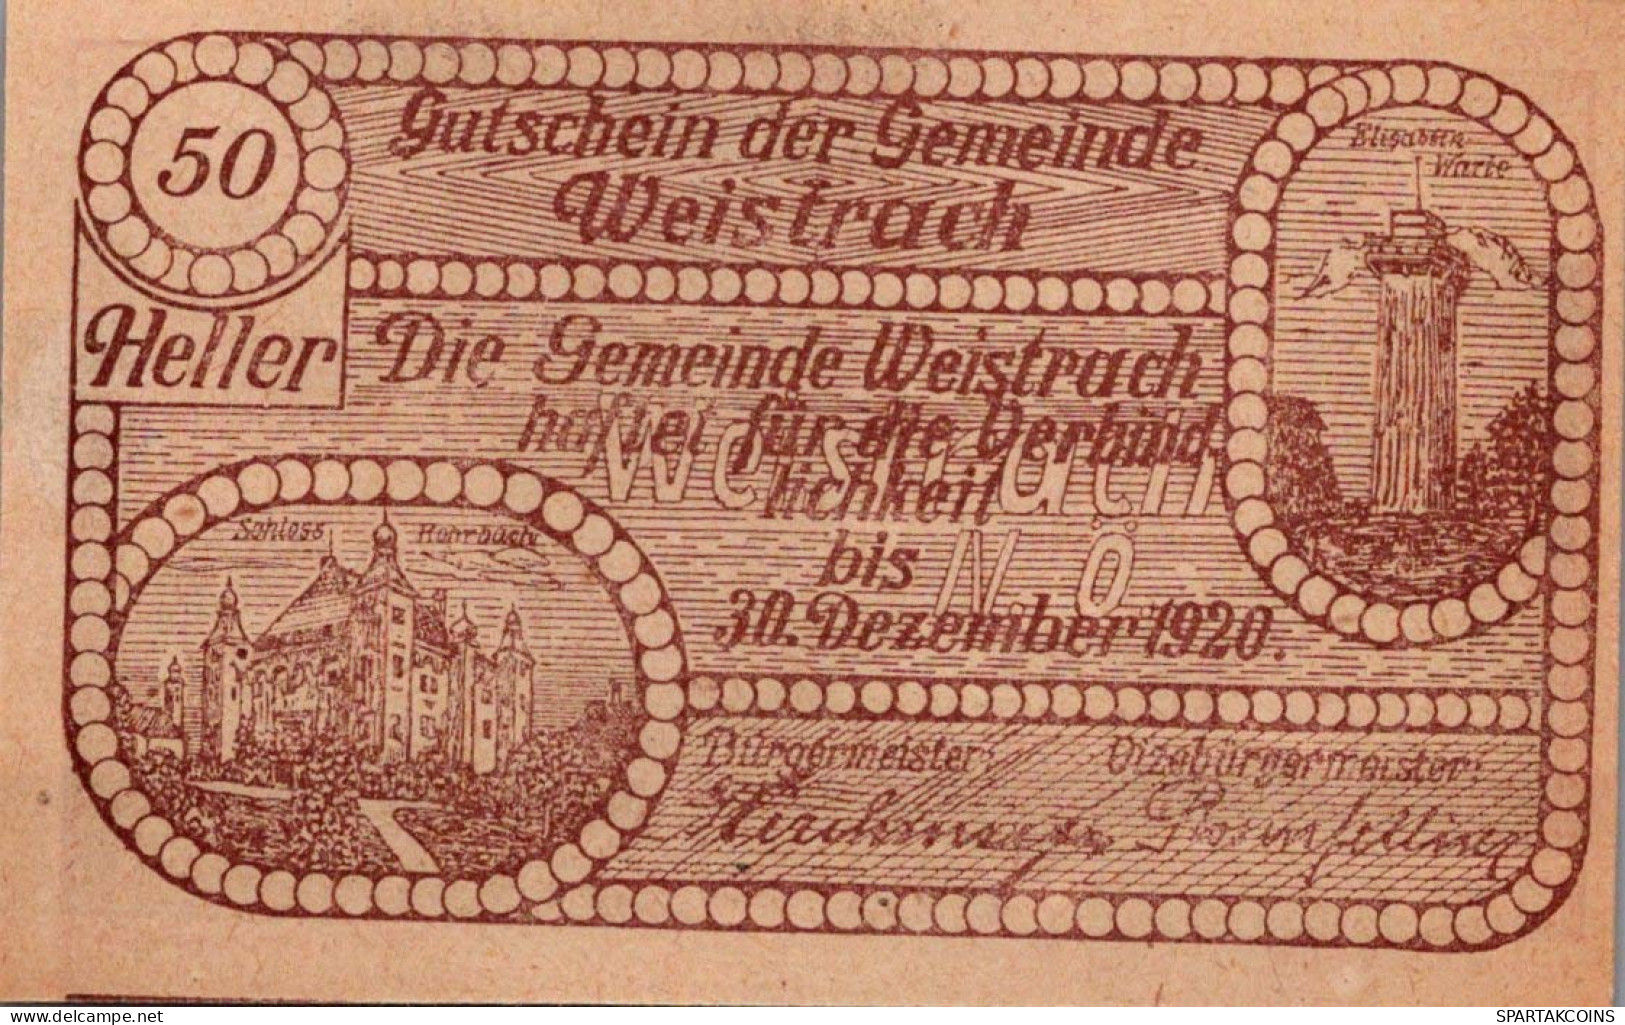 50 HELLER 1920 Stadt WEISTRACH Niedrigeren Österreich Notgeld Papiergeld Banknote #PG798 - [11] Lokale Uitgaven